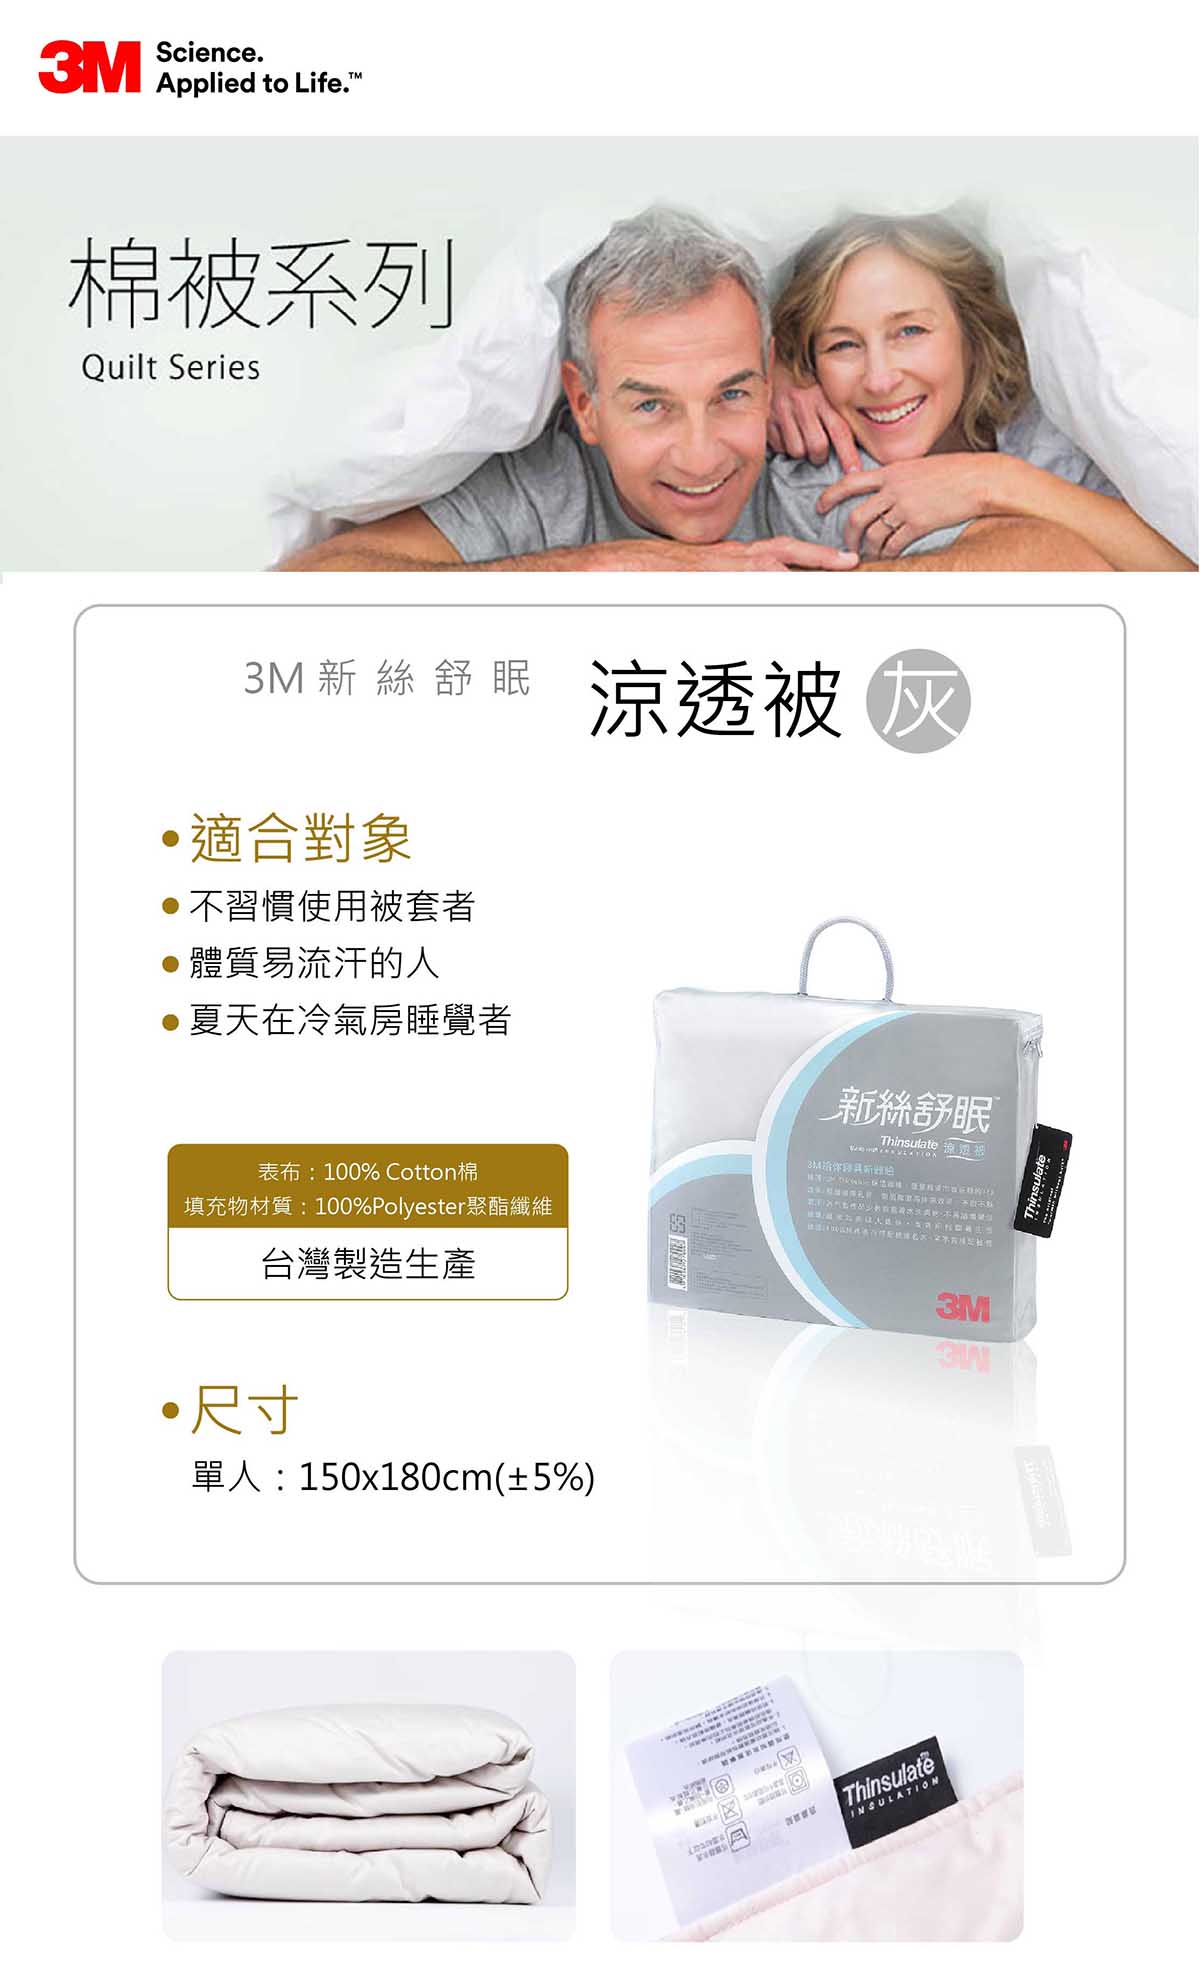 灰色3M新絲舒眠涼透被台灣製造生產為單人尺寸:150*180cm,適合對象為不習慣使用被套,易流汗體質,夏天在冷氣房睡覺的人。